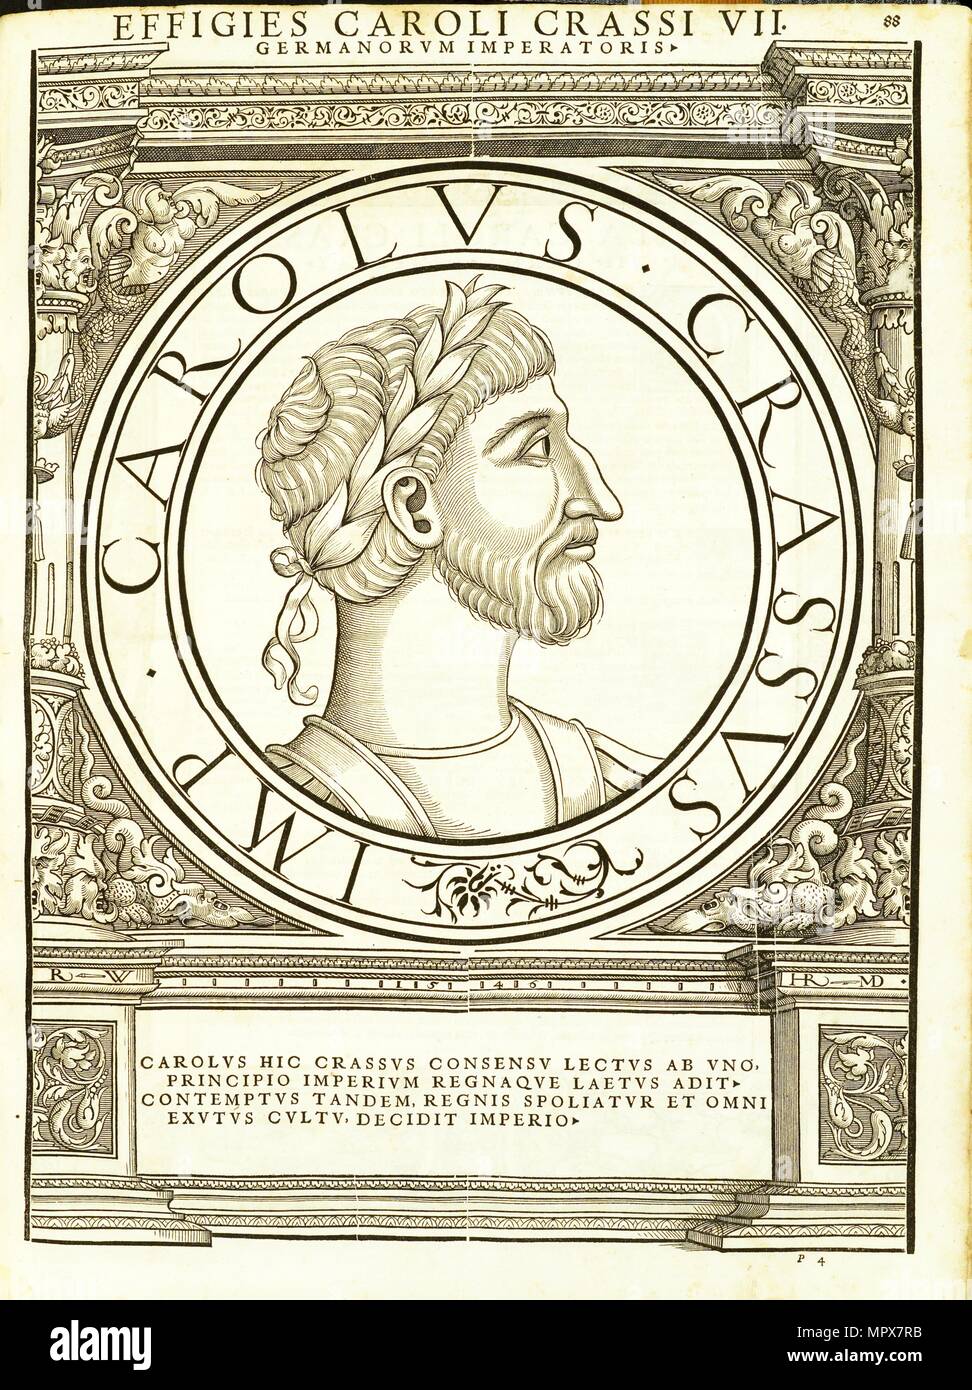 Carolus Crassus 839 - 888), 1559. Stock Photo